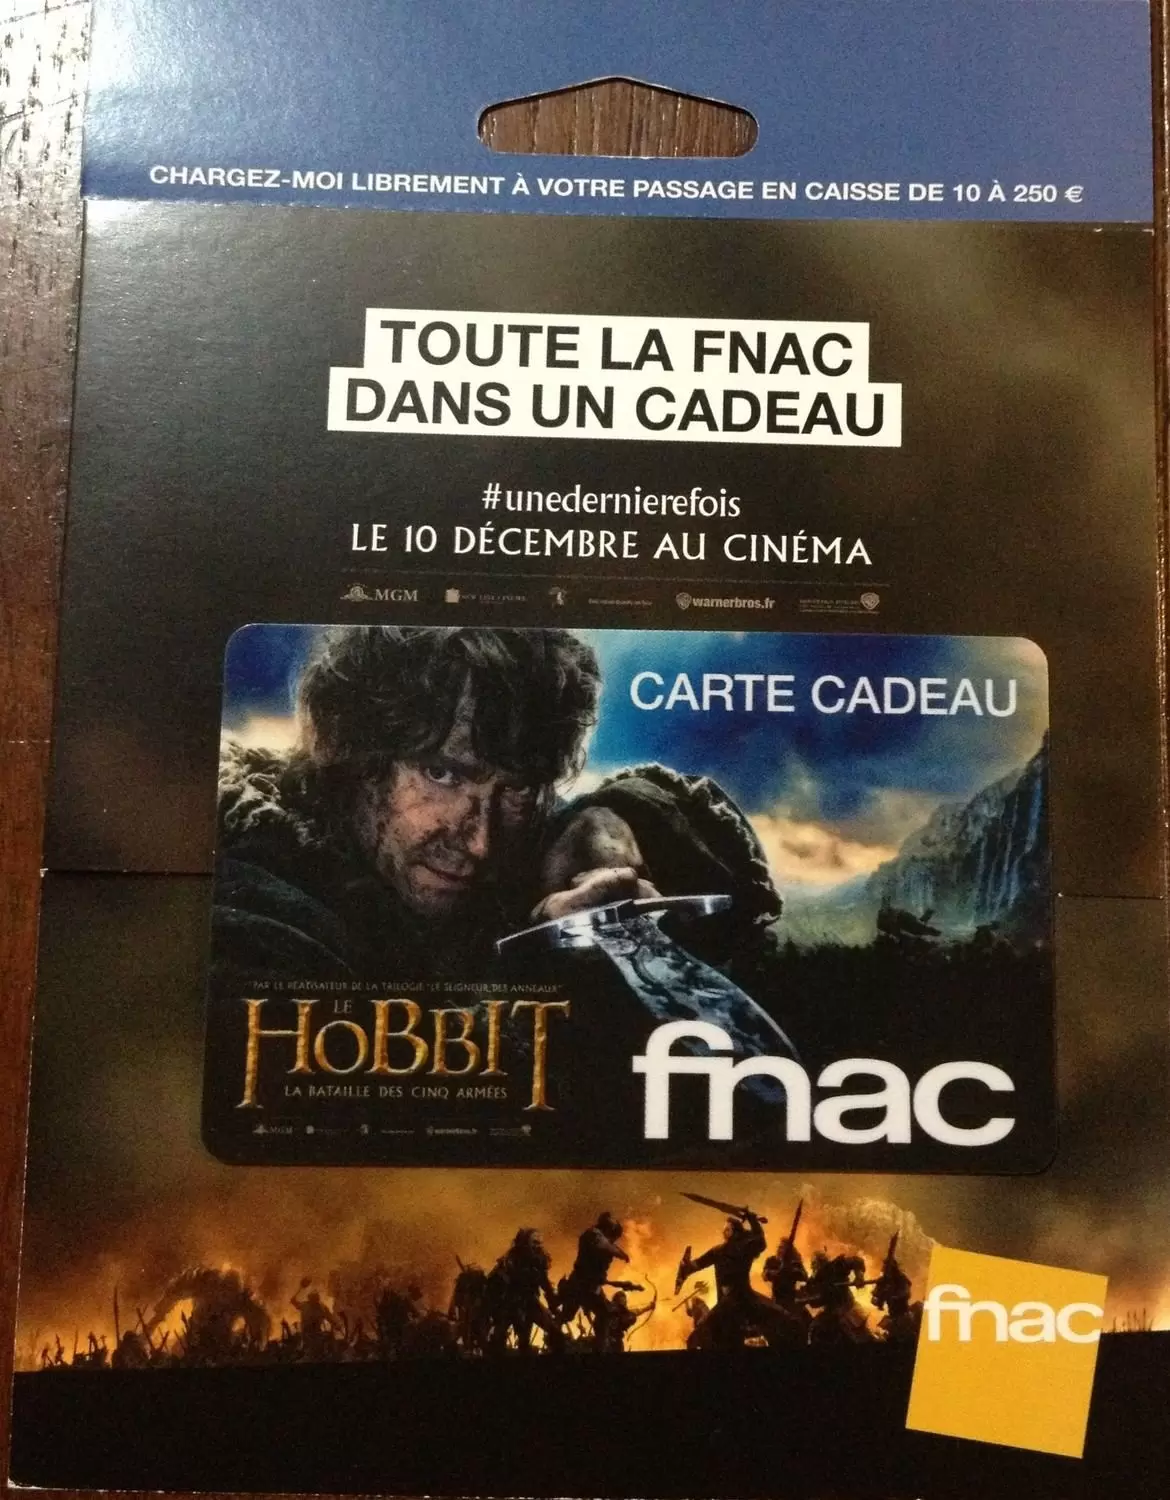 Cartes cadeau Fnac - Carte cadeau Fnac Le Hobbit La bataille des cinq armées